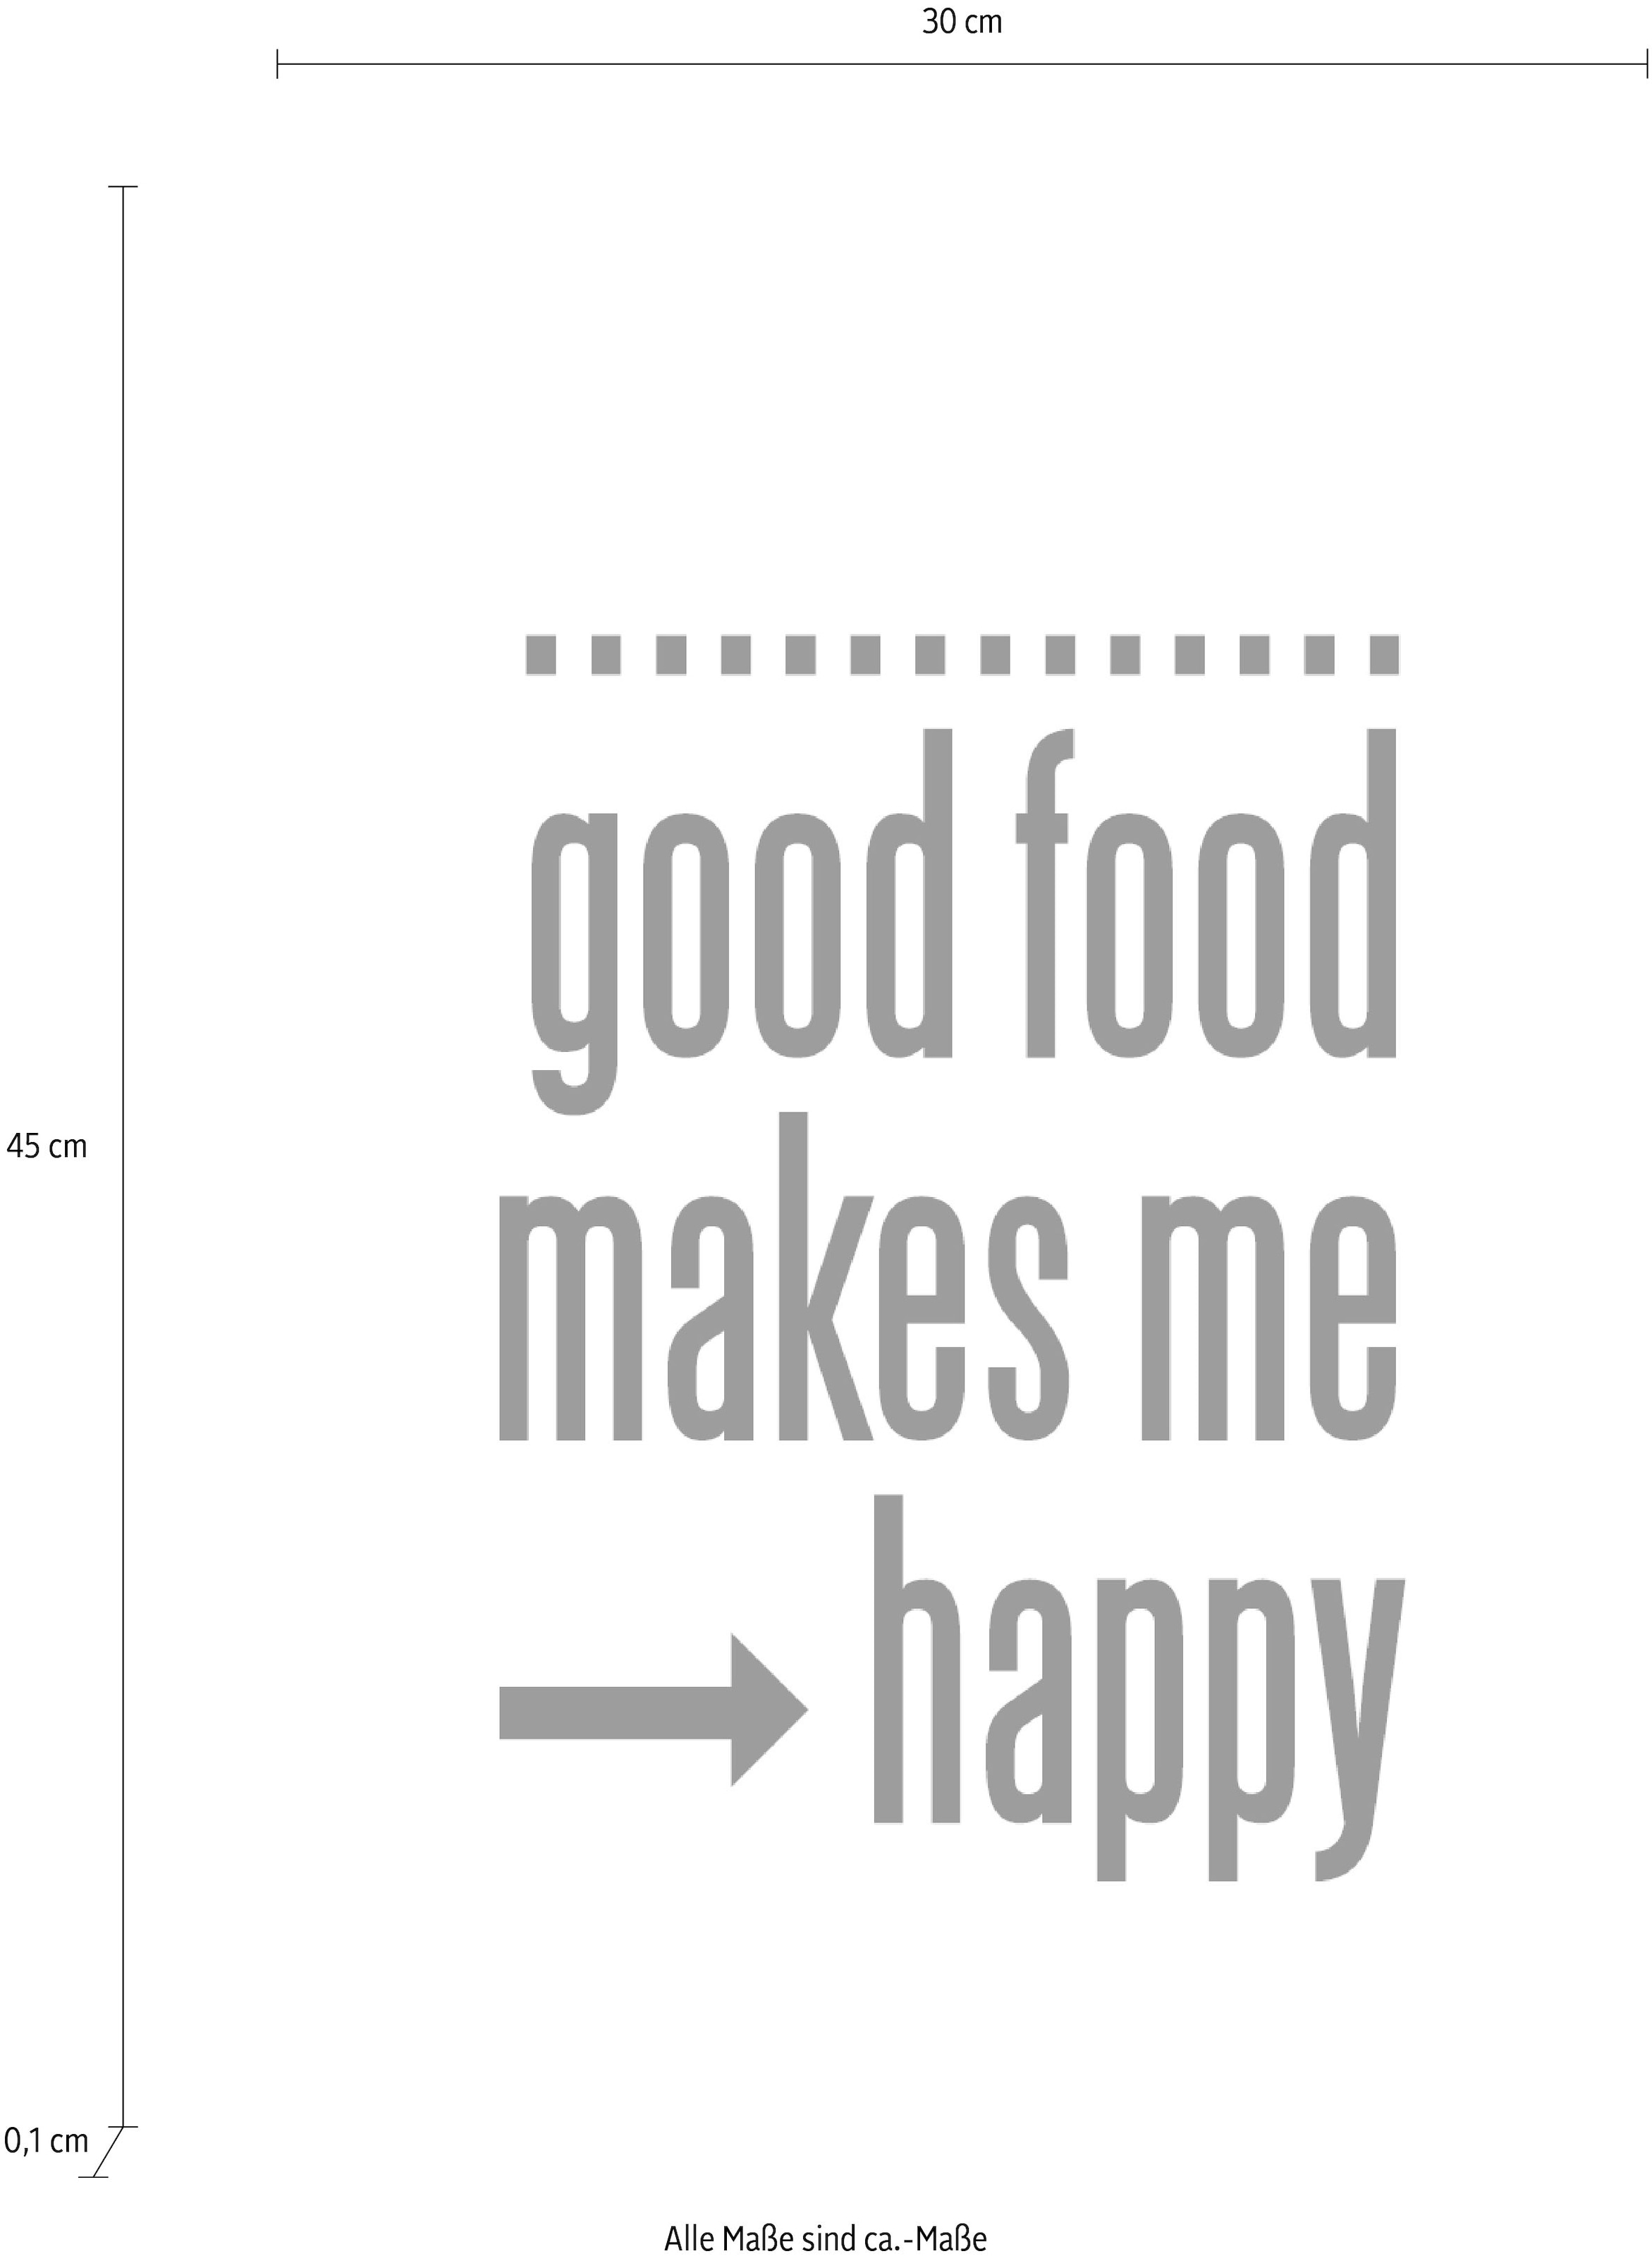 queence Wanddekoobjekt »Good food makes me - happy«, Schriftzug auf Stahlblech